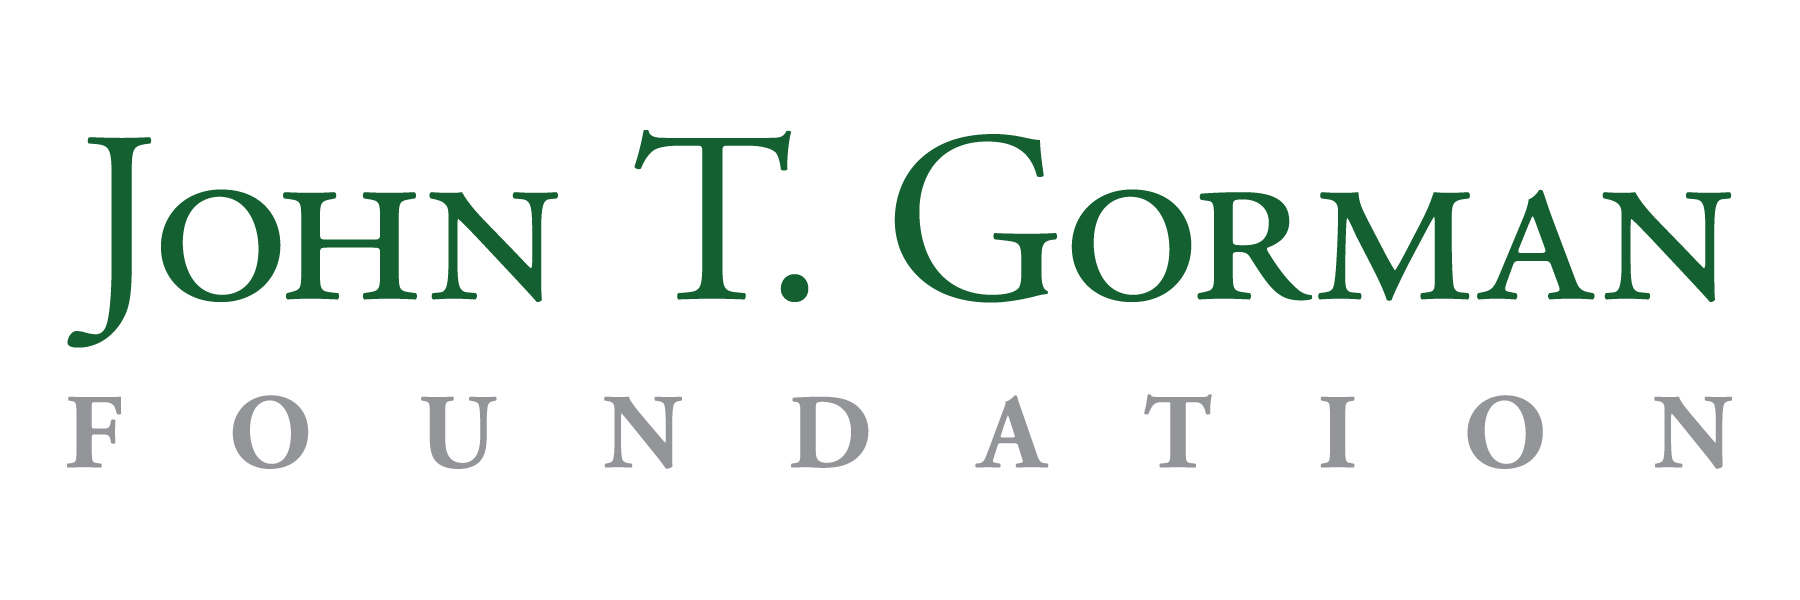 JT Gorman logo